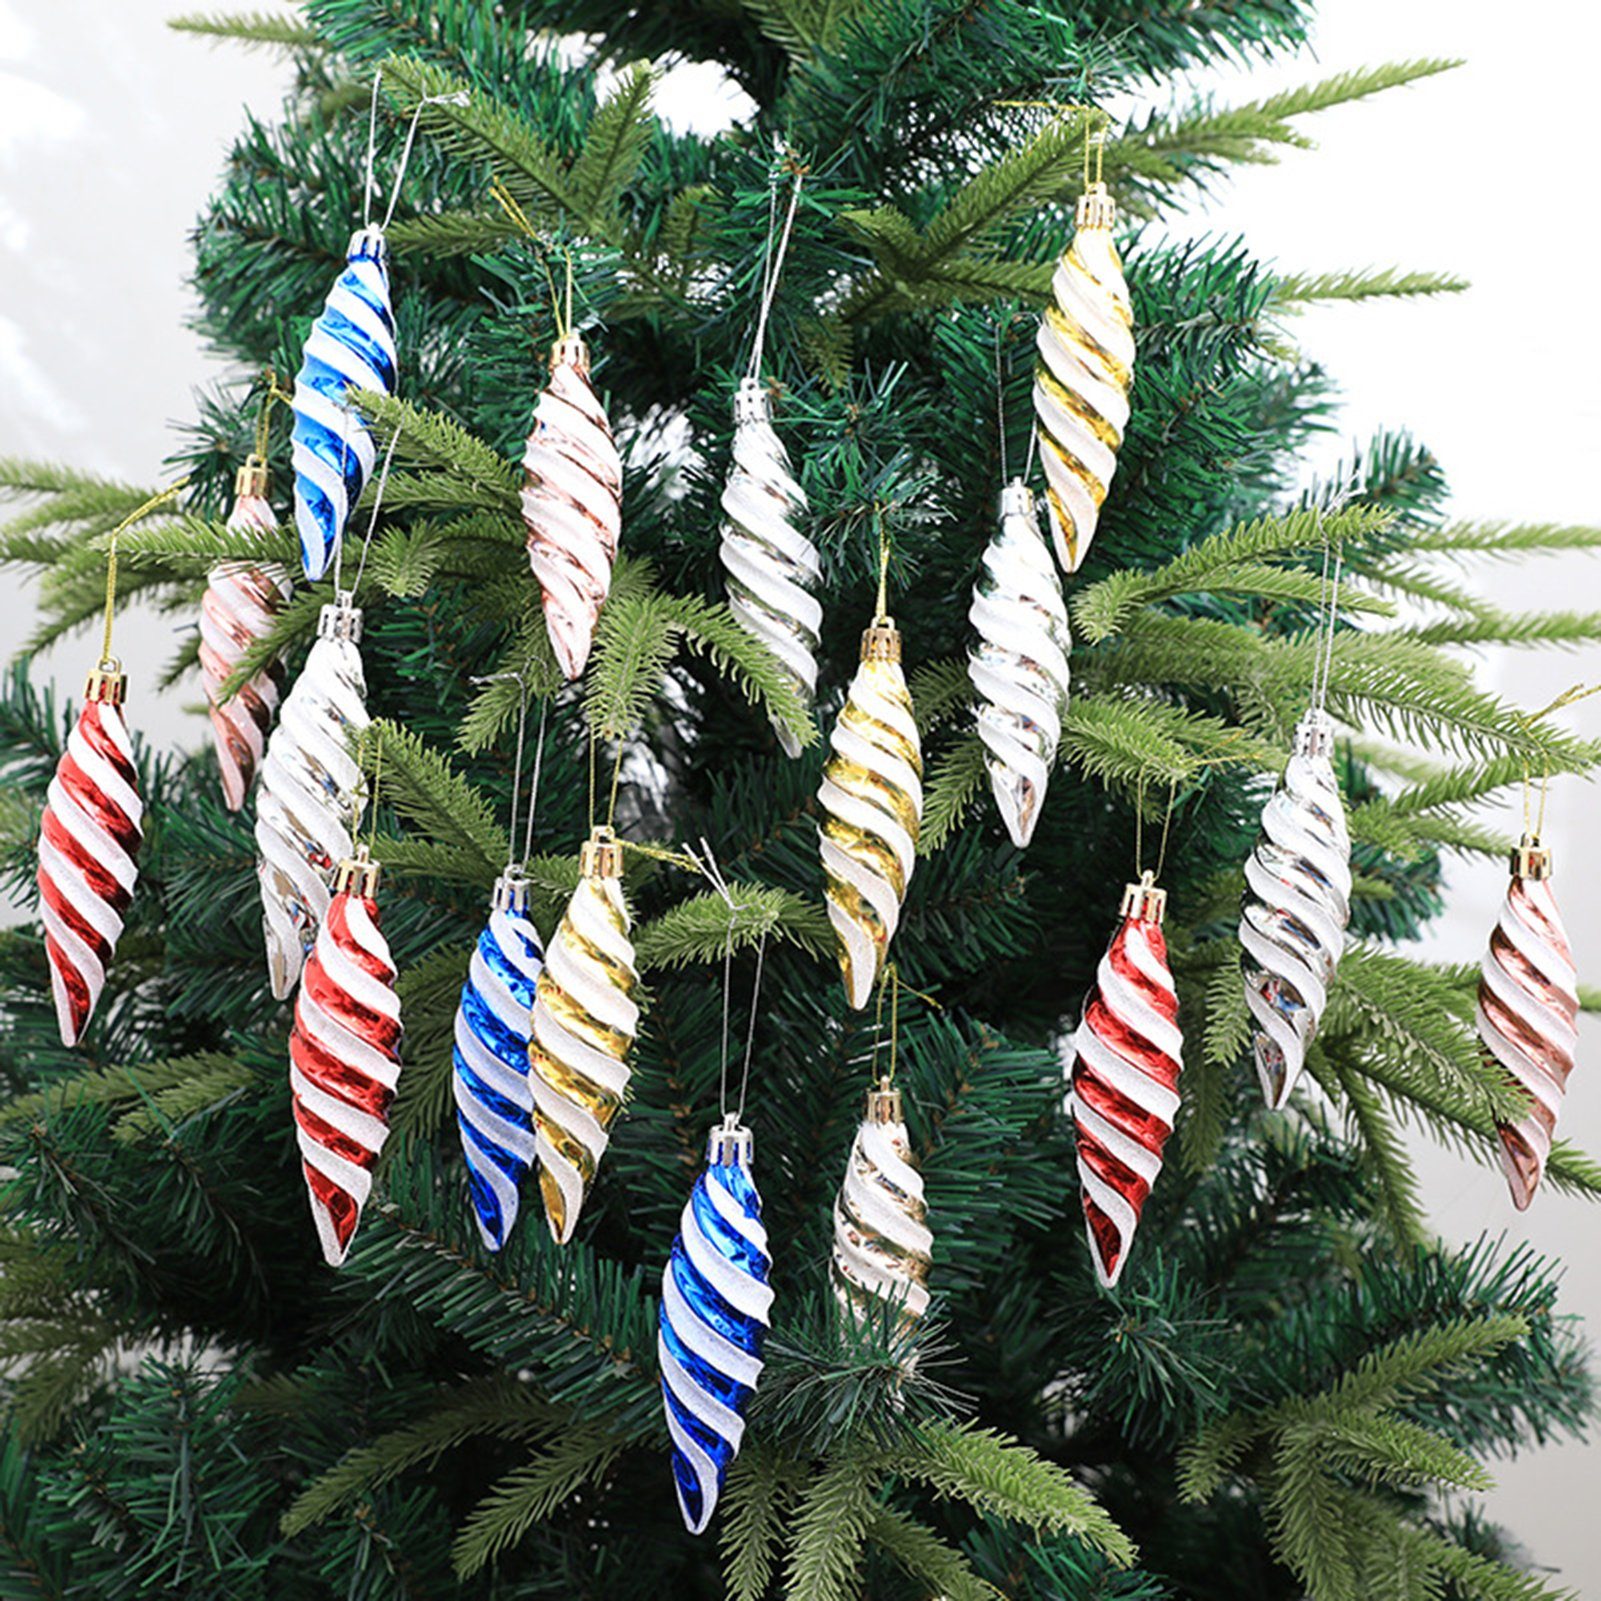 Rutaqian Dekohänger 12 Stück Weihnachtsbaum-Anhänger Schlüsselbändern Spitzer Farben) Spiralfaden Leuchtende Hängedekoration mit Spiralanhänger (Bemalte Roségold